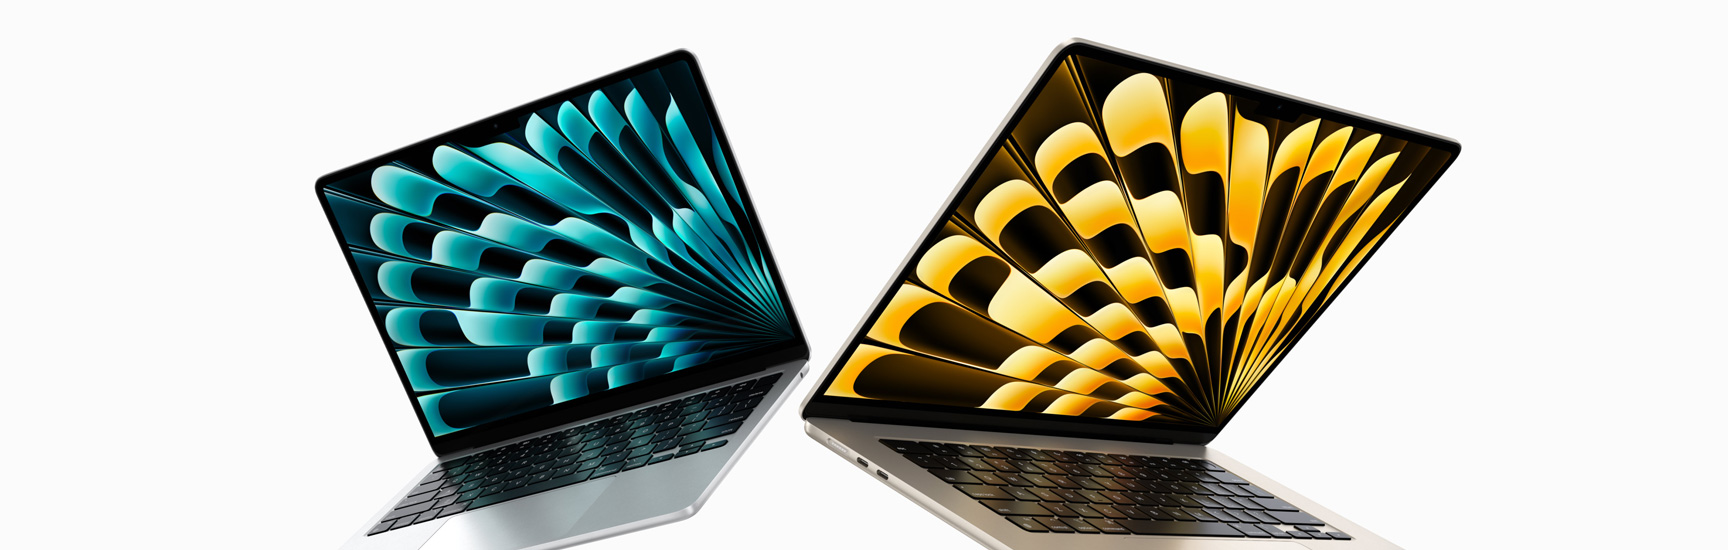 Vista frontal de los modelos de los MacBook Air de 13 y 15 pulgadas color plata y blanco estelar que están levemente abiertas y que destacan los distintos tamaños de las pantallas.